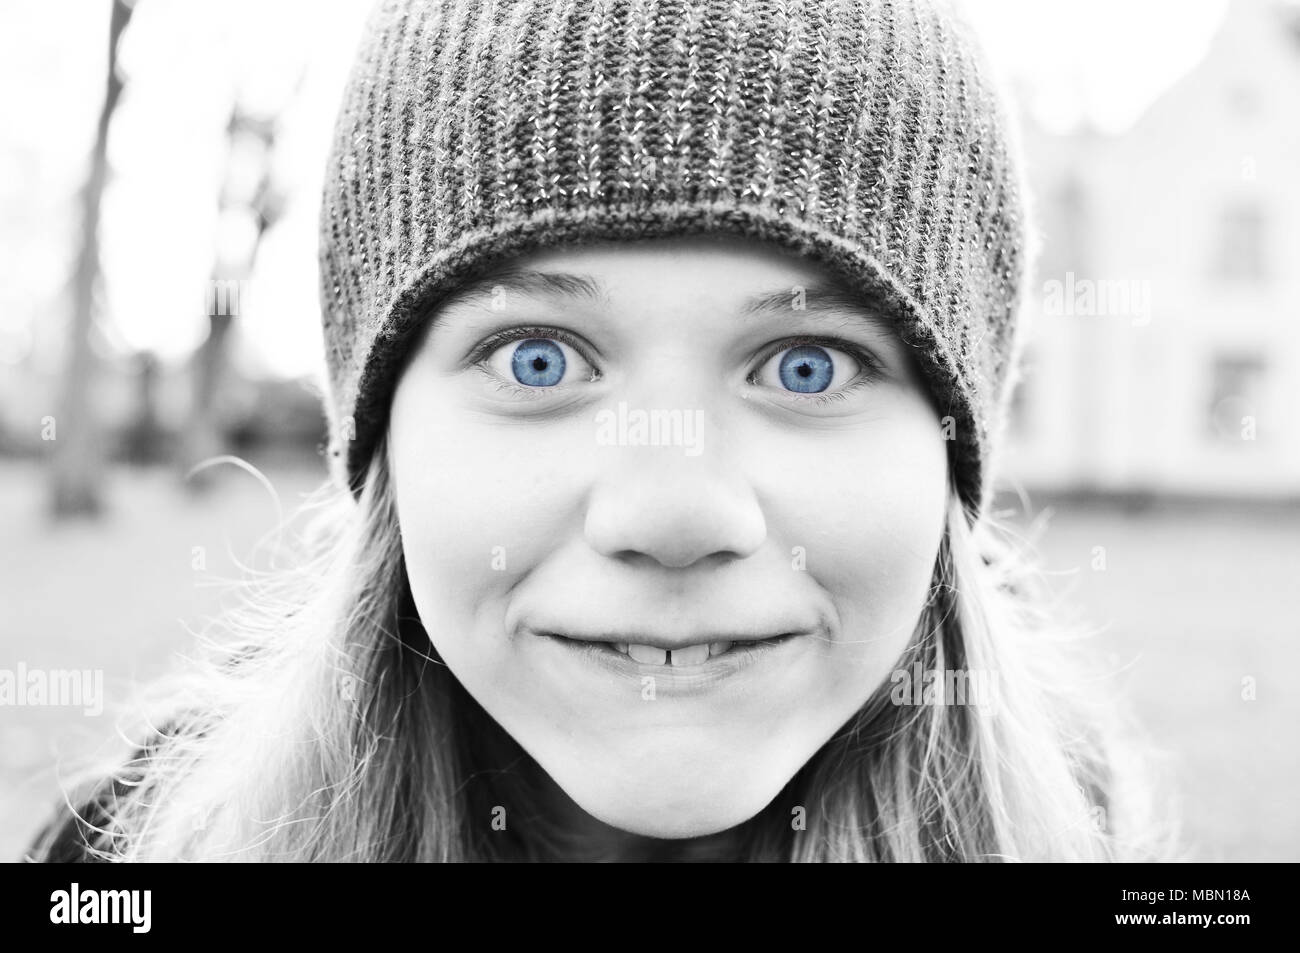 Immagine in bianco e nero di stupida ragazza con gli occhi blu. Foto Stock